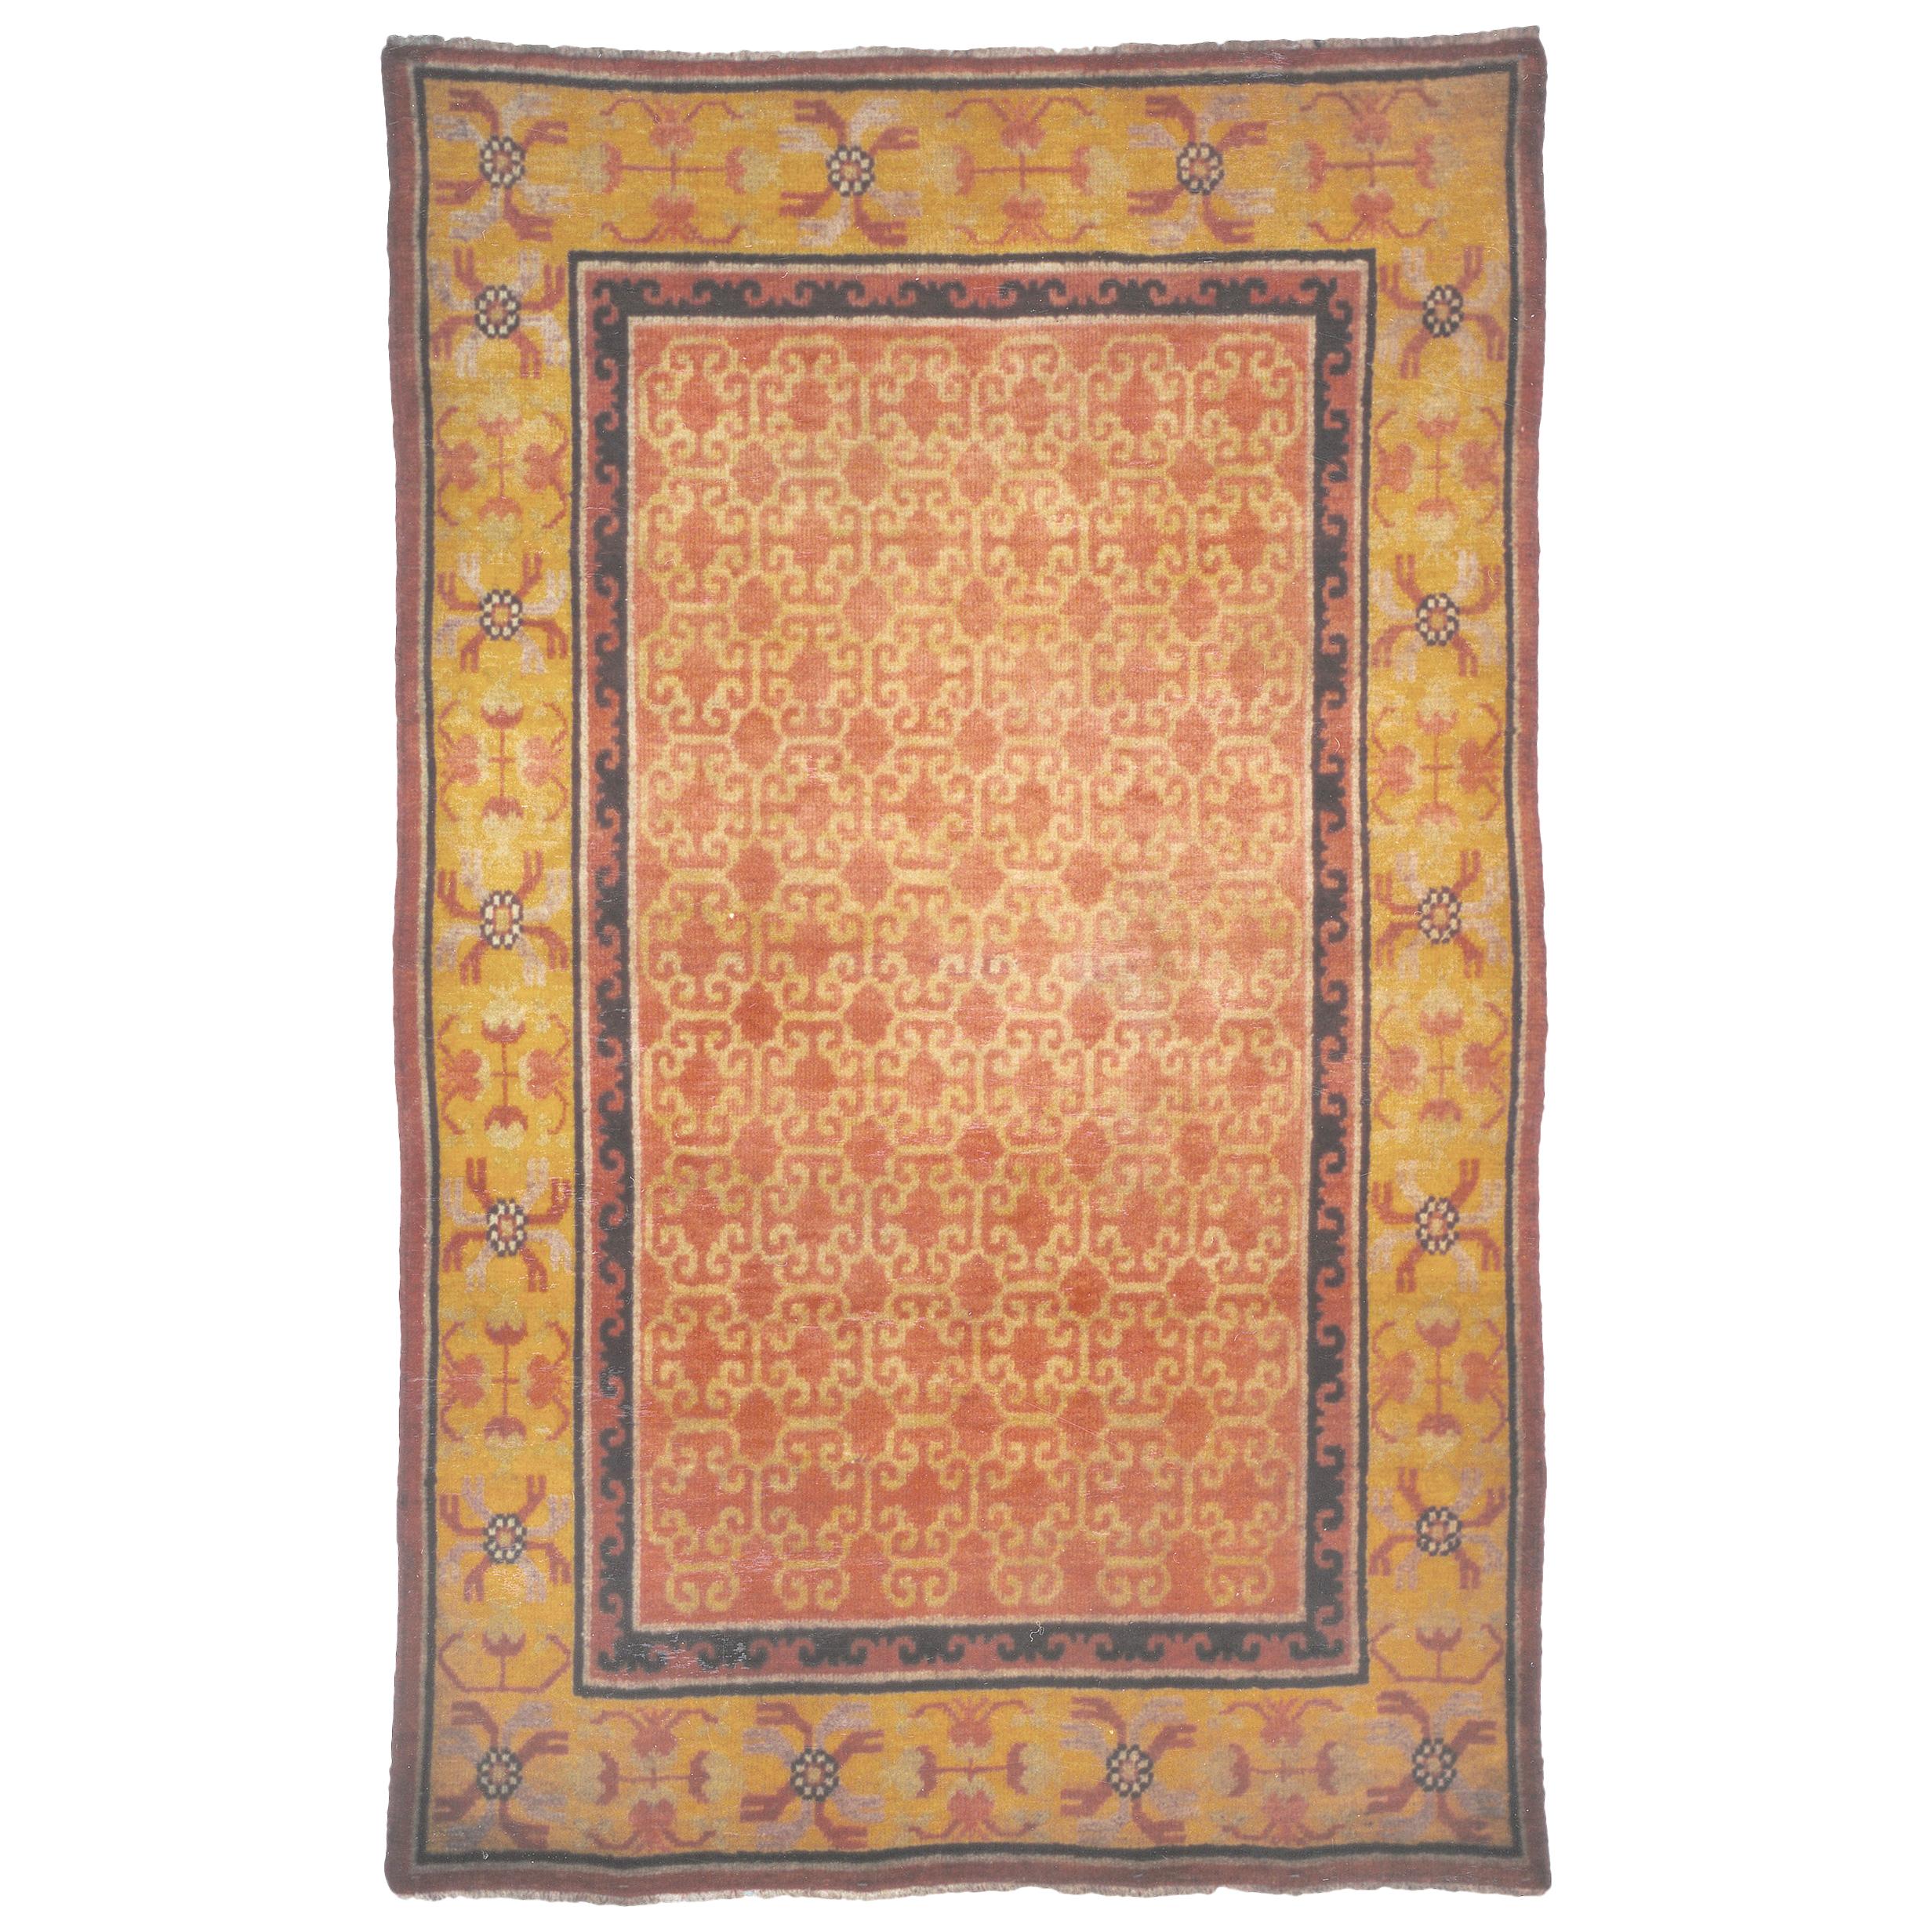 Ostturkestanischer Khotan-Teppich des frühen 20. Jahrhunderts